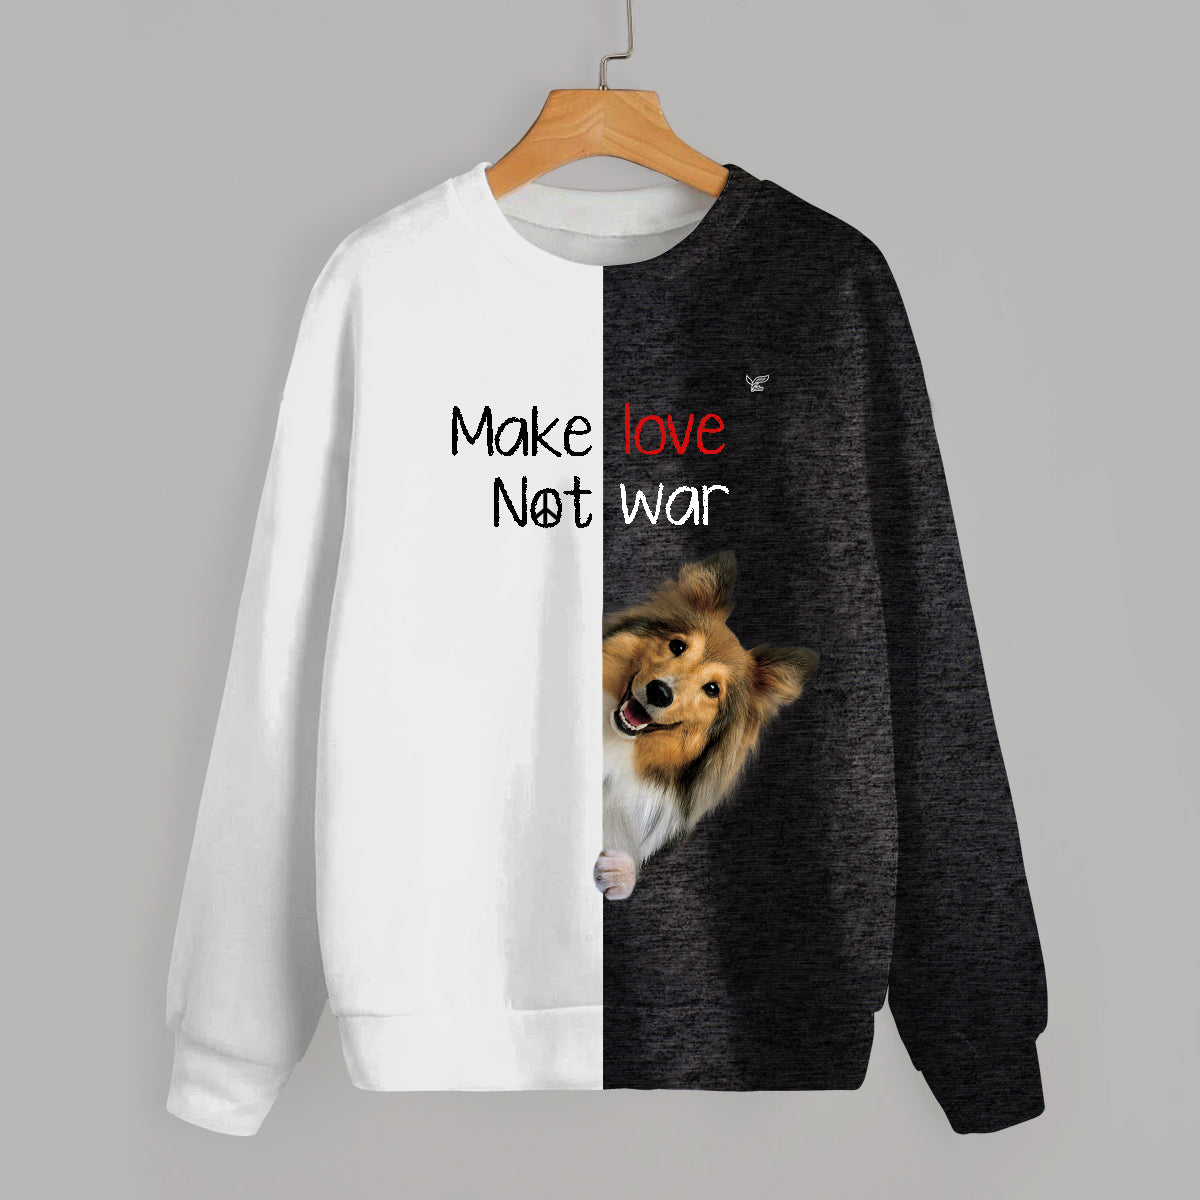 Faites l'amour, pas la guerre - Sweat-shirt pour chien de berger des Shetland V1